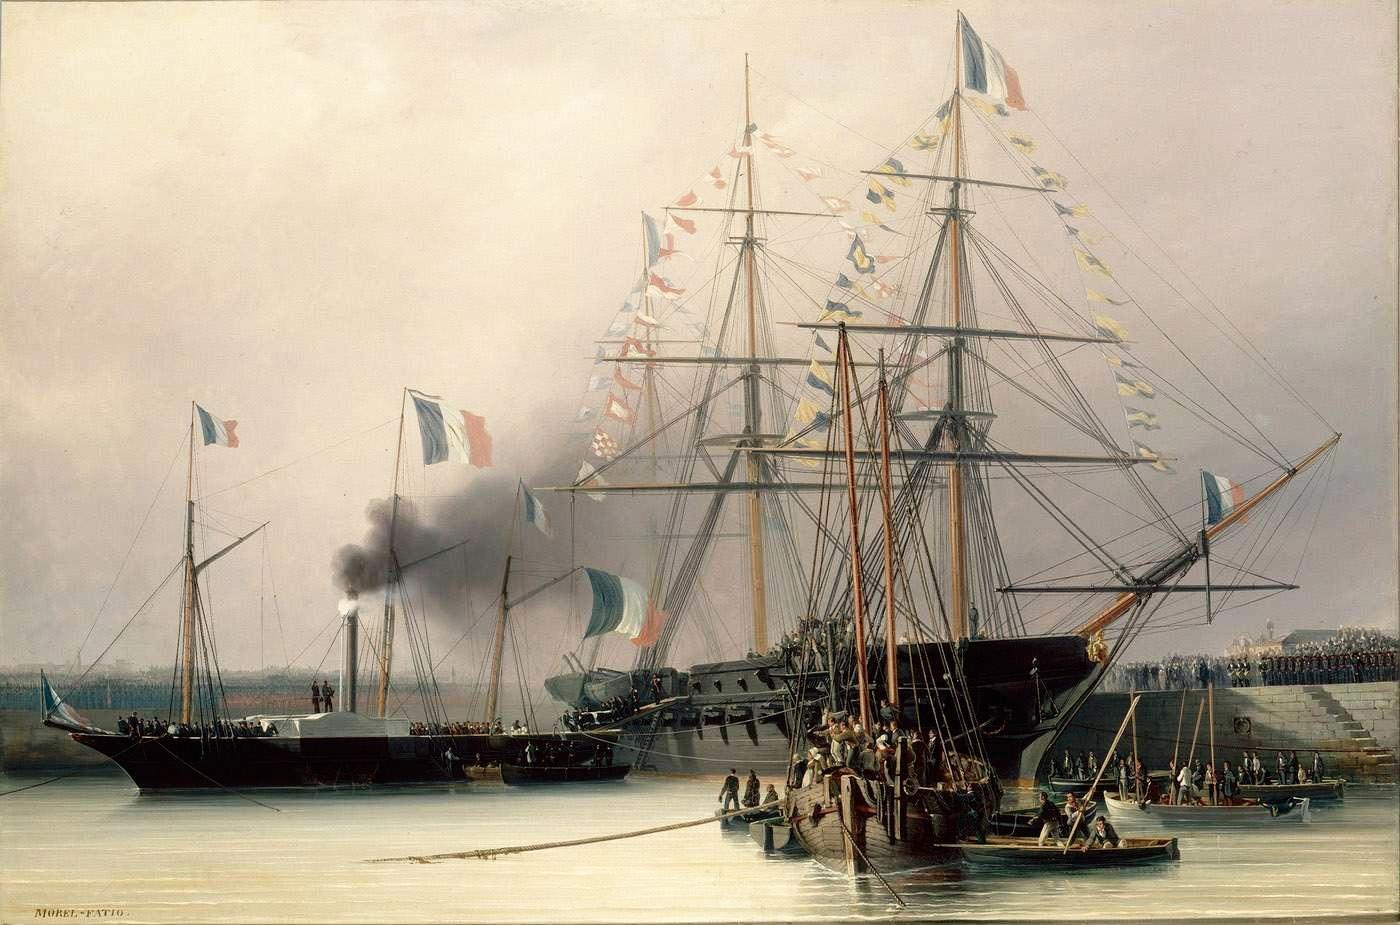 Transbordement des cendres de Napoléon Ier de la Belle Poule sur le vapeur "Normandie" en rade de Cherbourg, 8 décembre 1840.